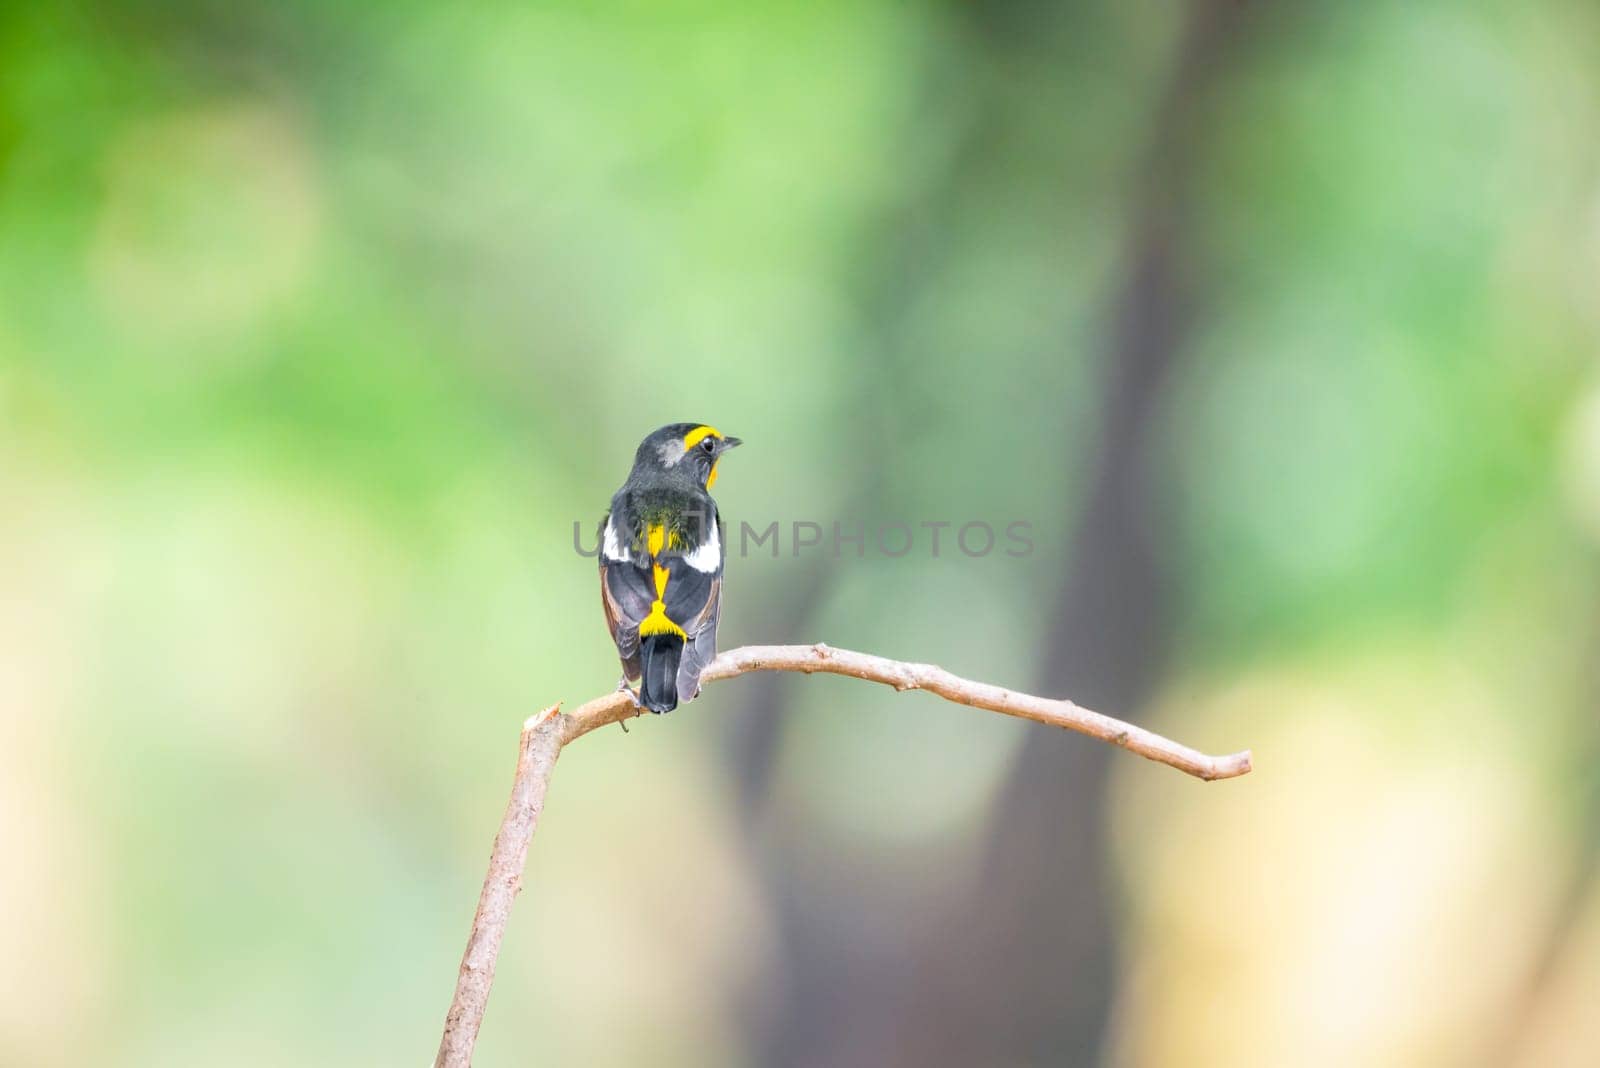 Bird (Narcissus Flycatcher) on tree in nature wild by PongMoji